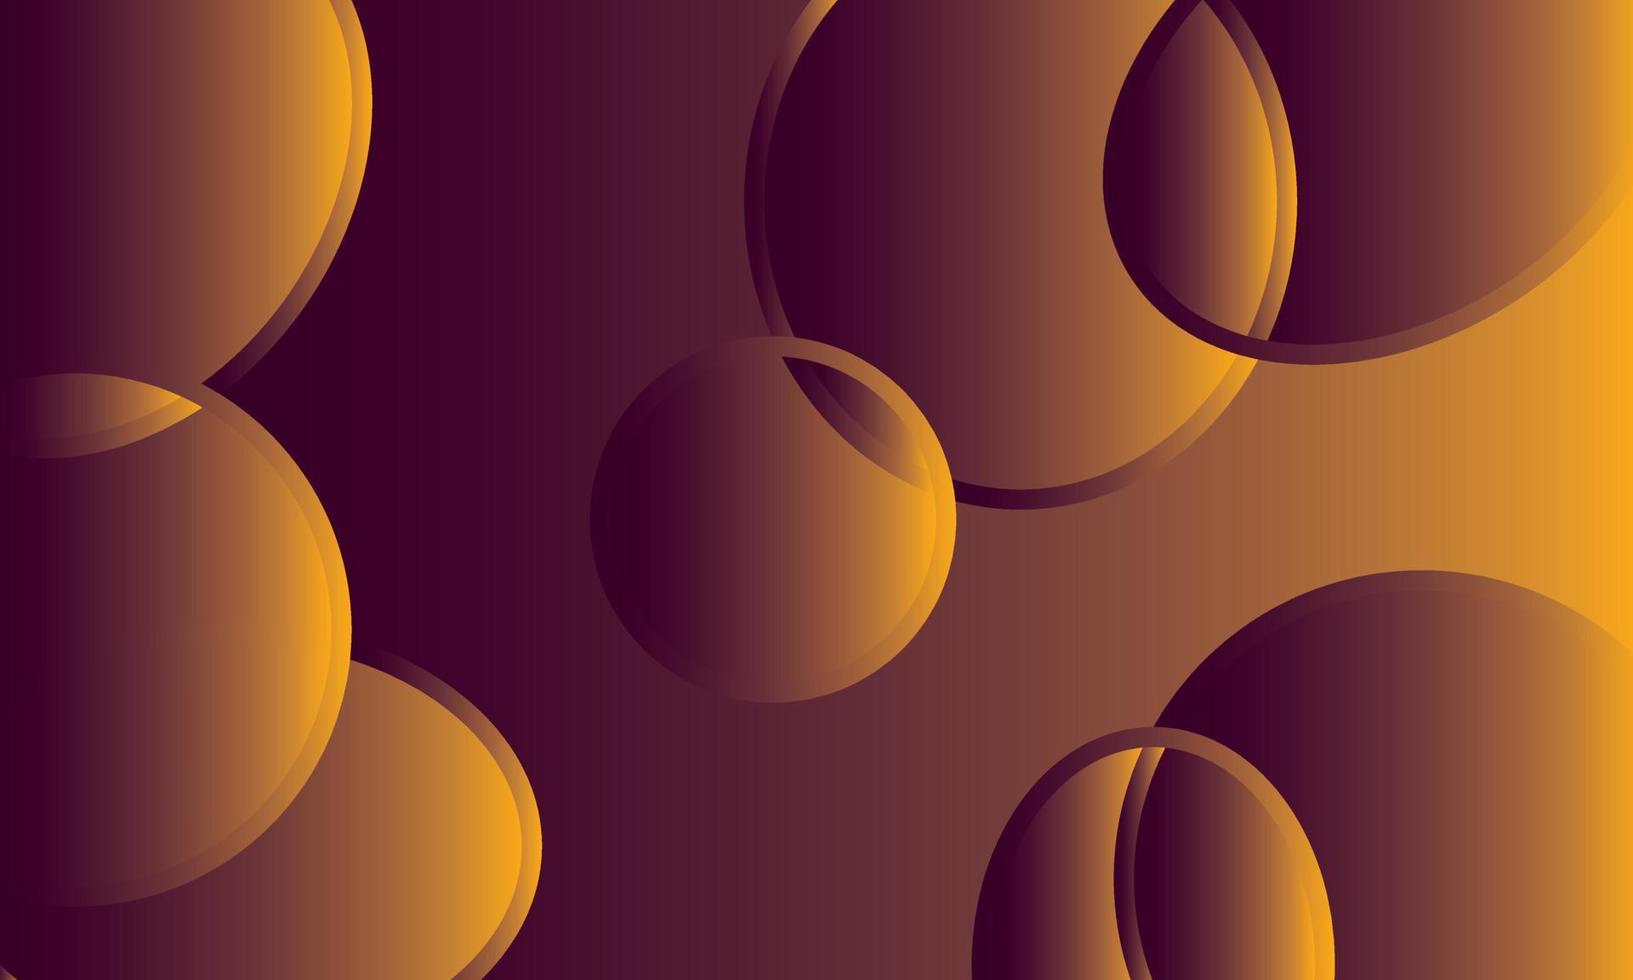 Kreisrahmen auf lila gelbem Hintergrund 3d vektor